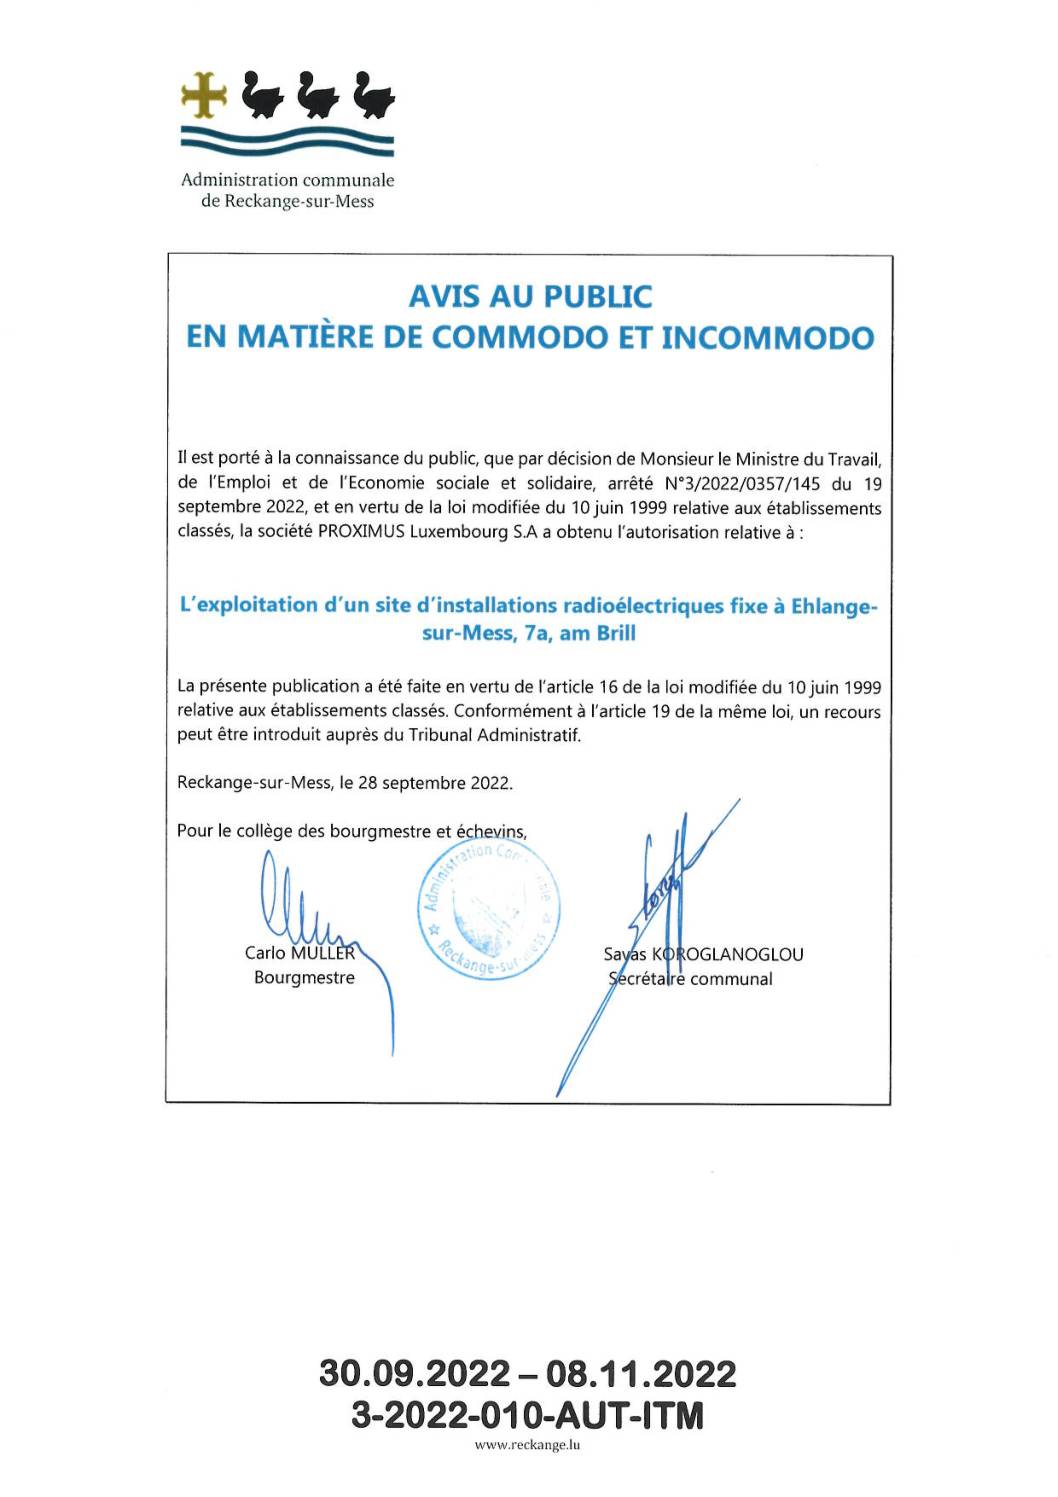 PROXIMUS Luxembourg S.A a obtenu l’autorisation (ITM) relative à: L’exploitation d’un site d’installations radioélectriques fixe à Ehlange-sur-Mess, 7a, am Brill